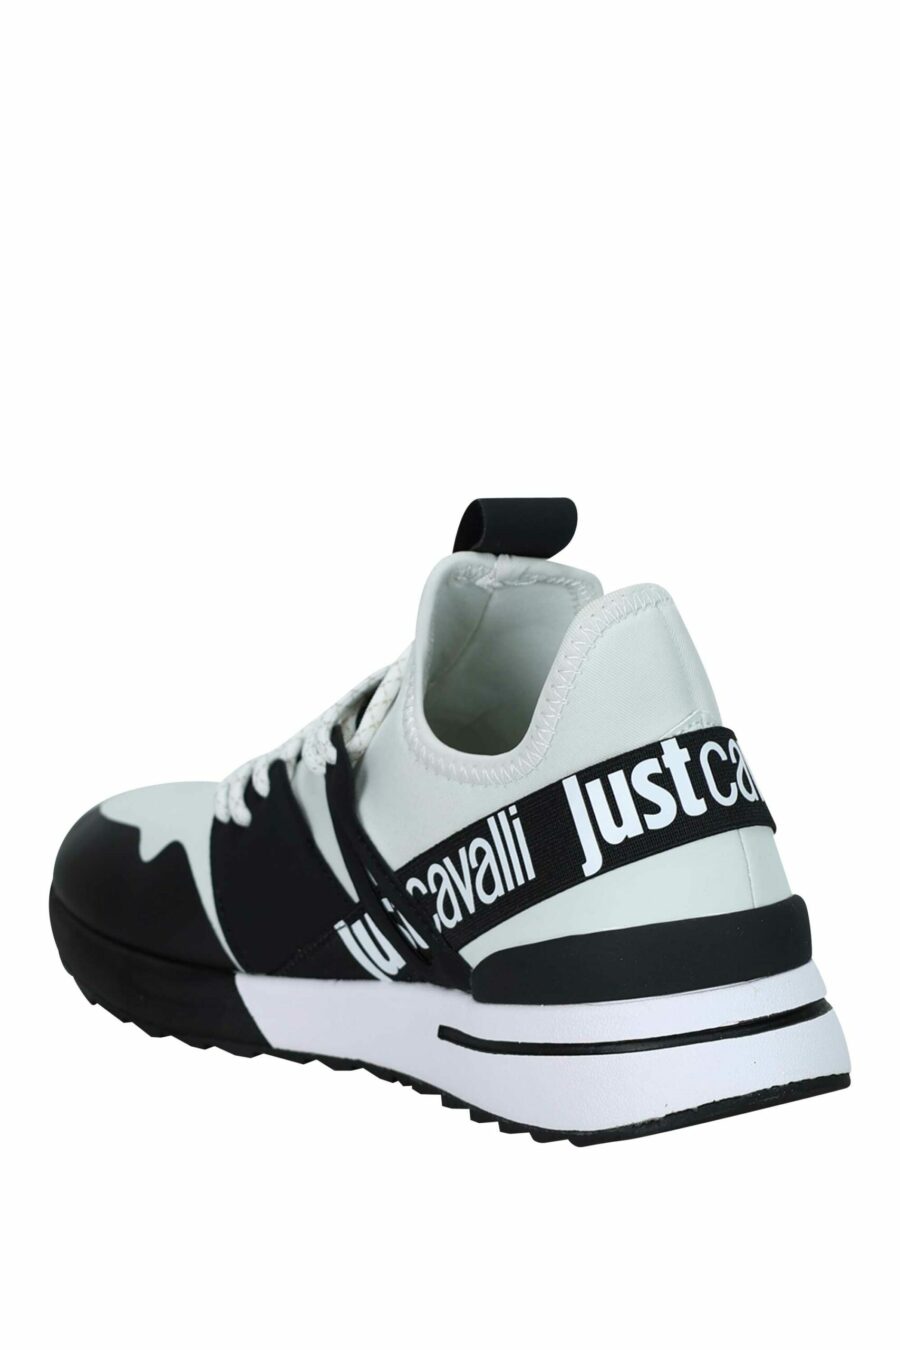 Zapatillas bicolor blancas y negras con logo en cinta - 8052672738127 3 scaled